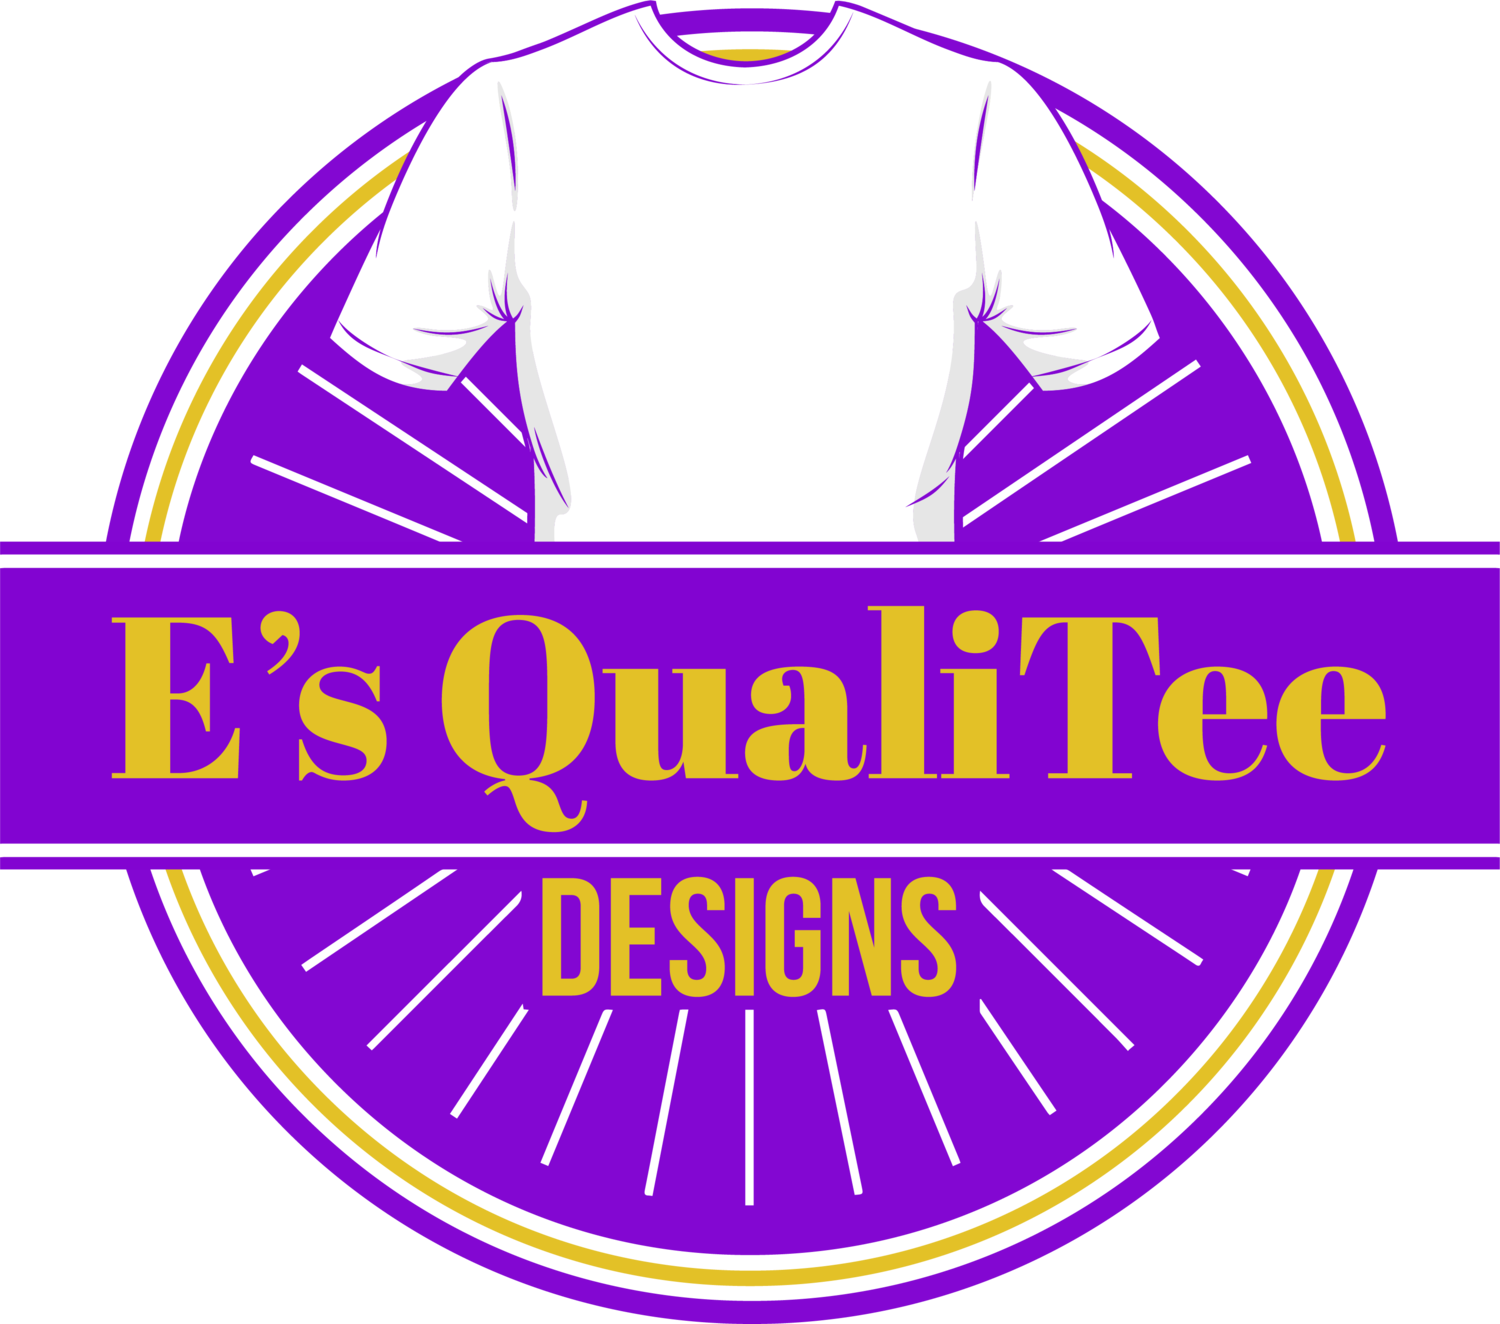 E's qualiTee designs